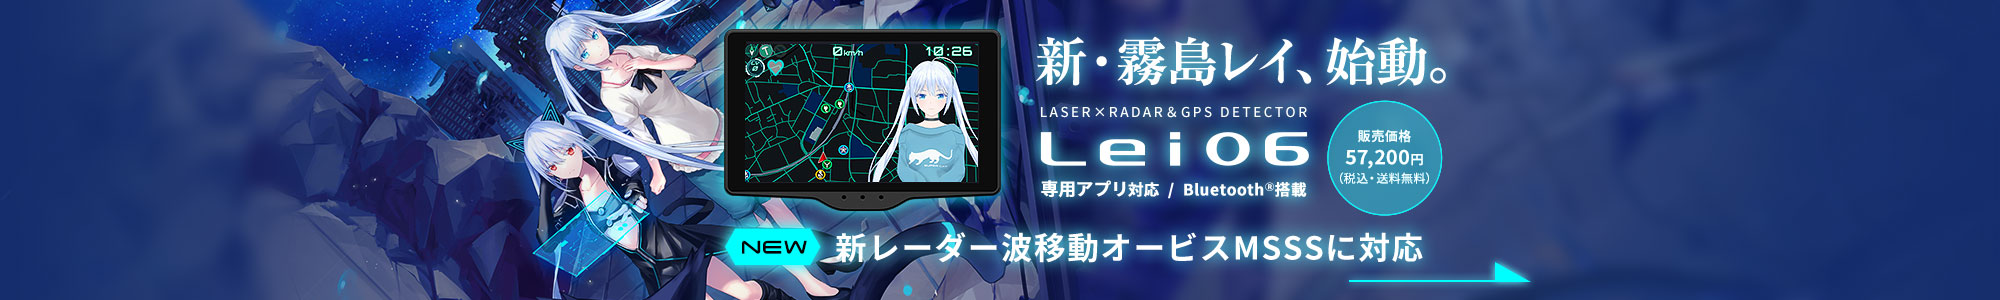 レーザー＆レーダー探知機 Lei06